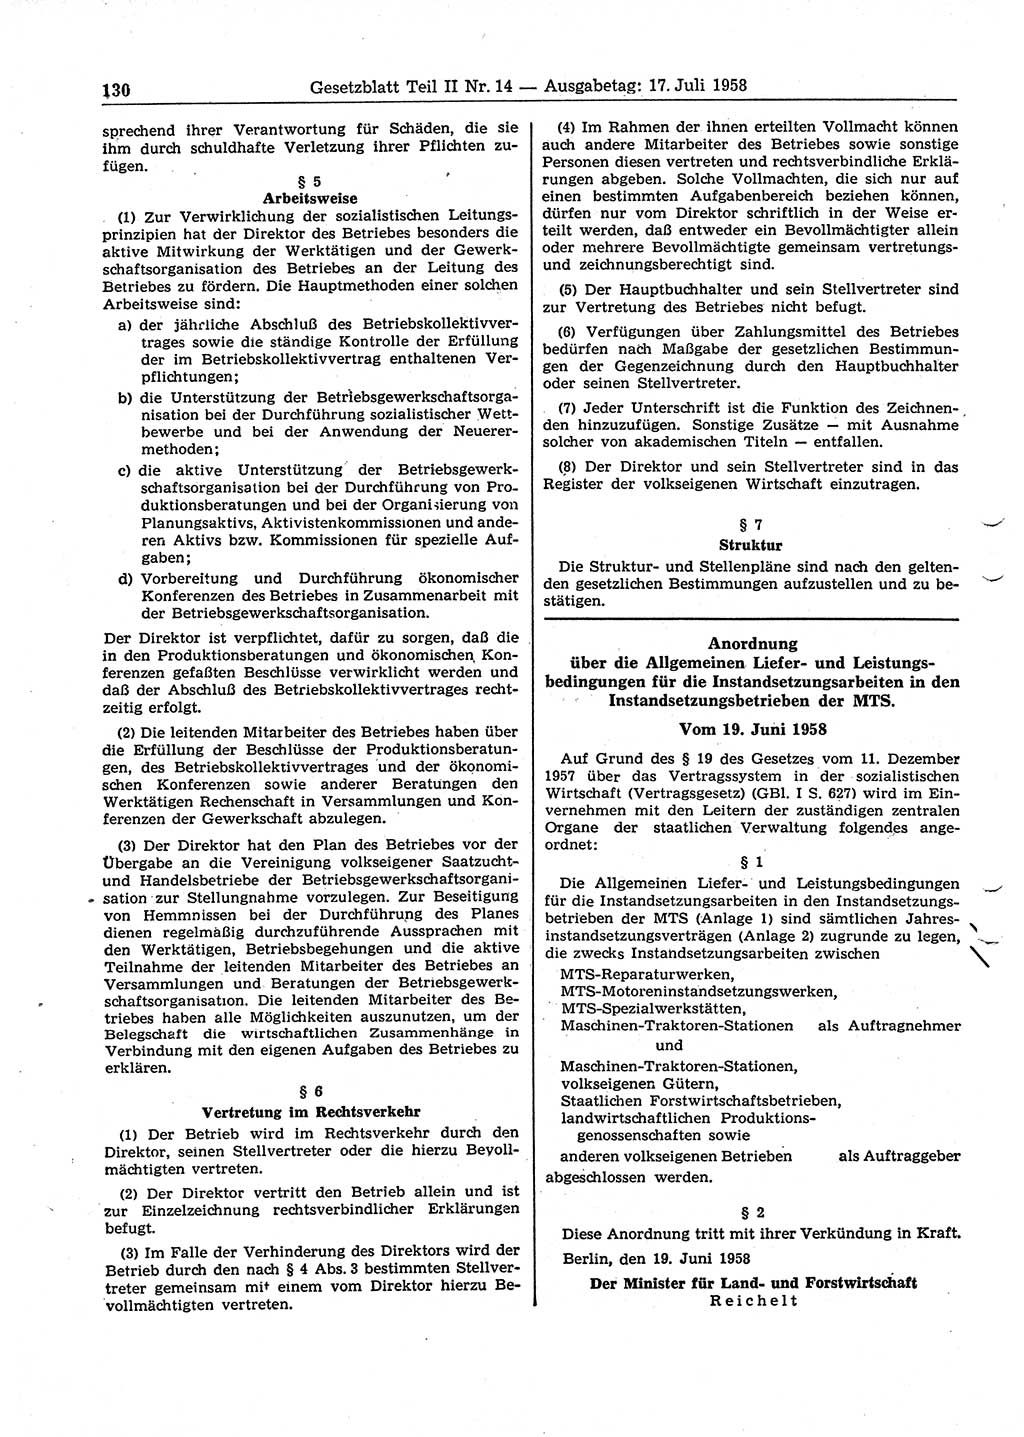 Gesetzblatt (GBl.) der Deutschen Demokratischen Republik (DDR) Teil ⅠⅠ 1958, Seite 130 (GBl. DDR ⅠⅠ 1958, S. 130)